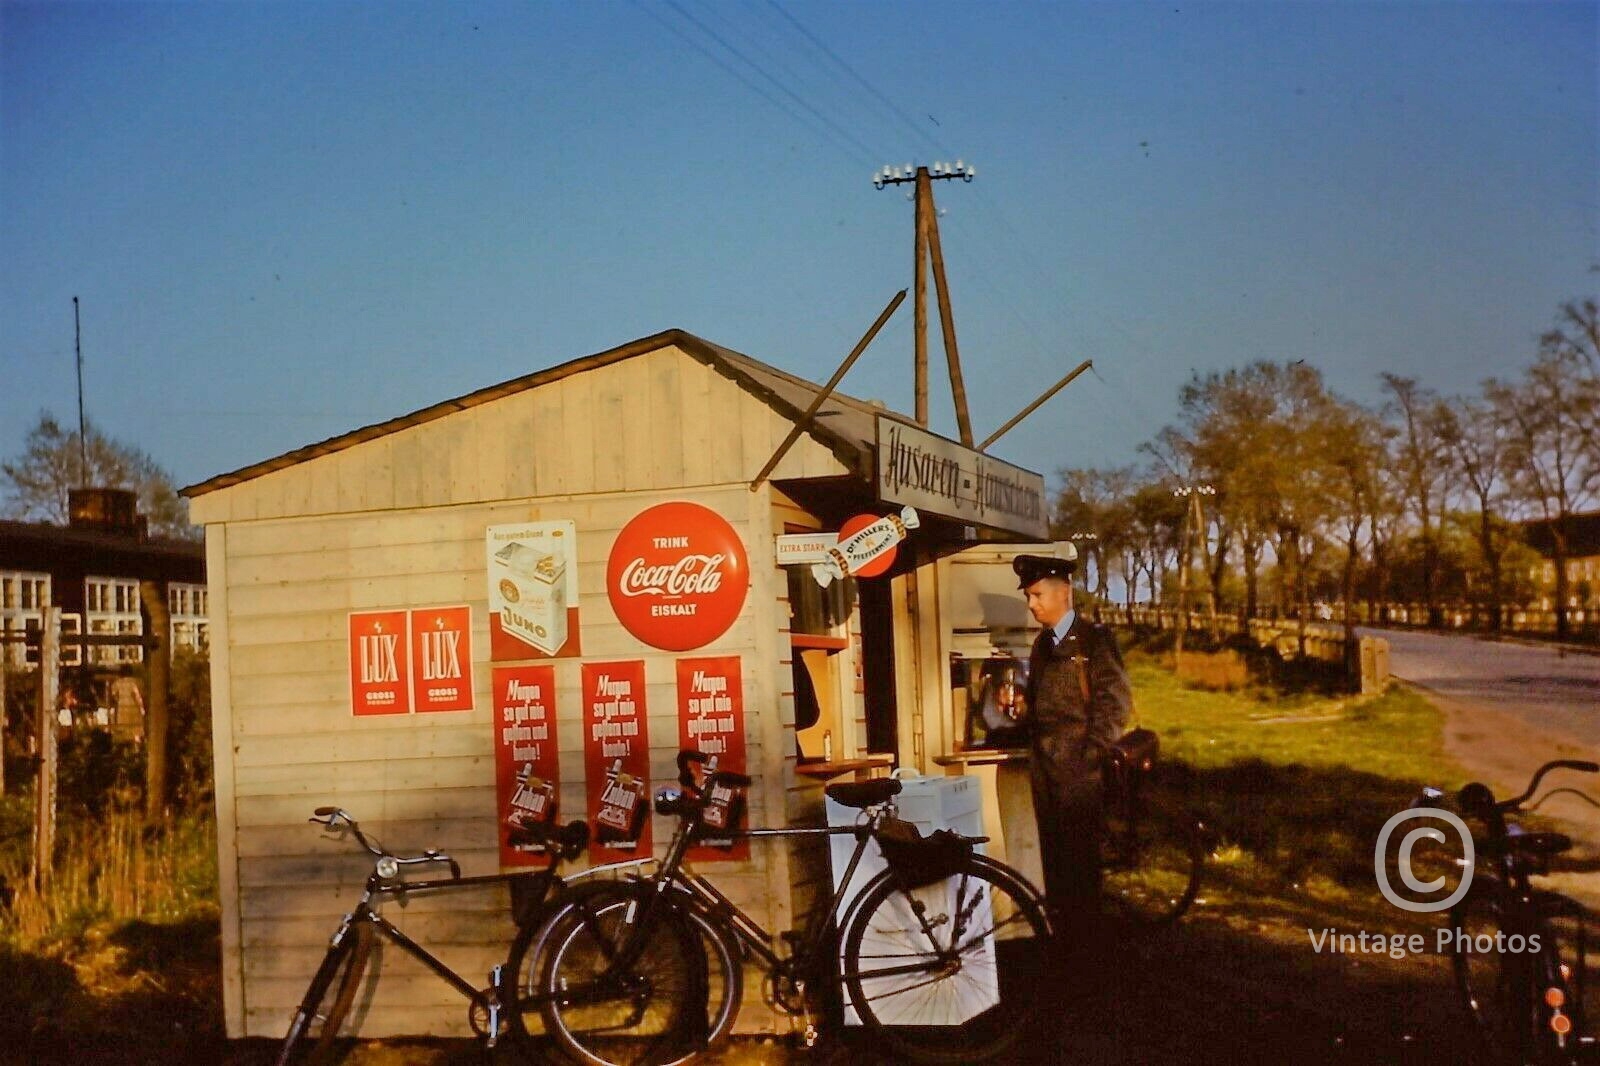 1950s Kiosk selling Coca-Cola & Cigarettes